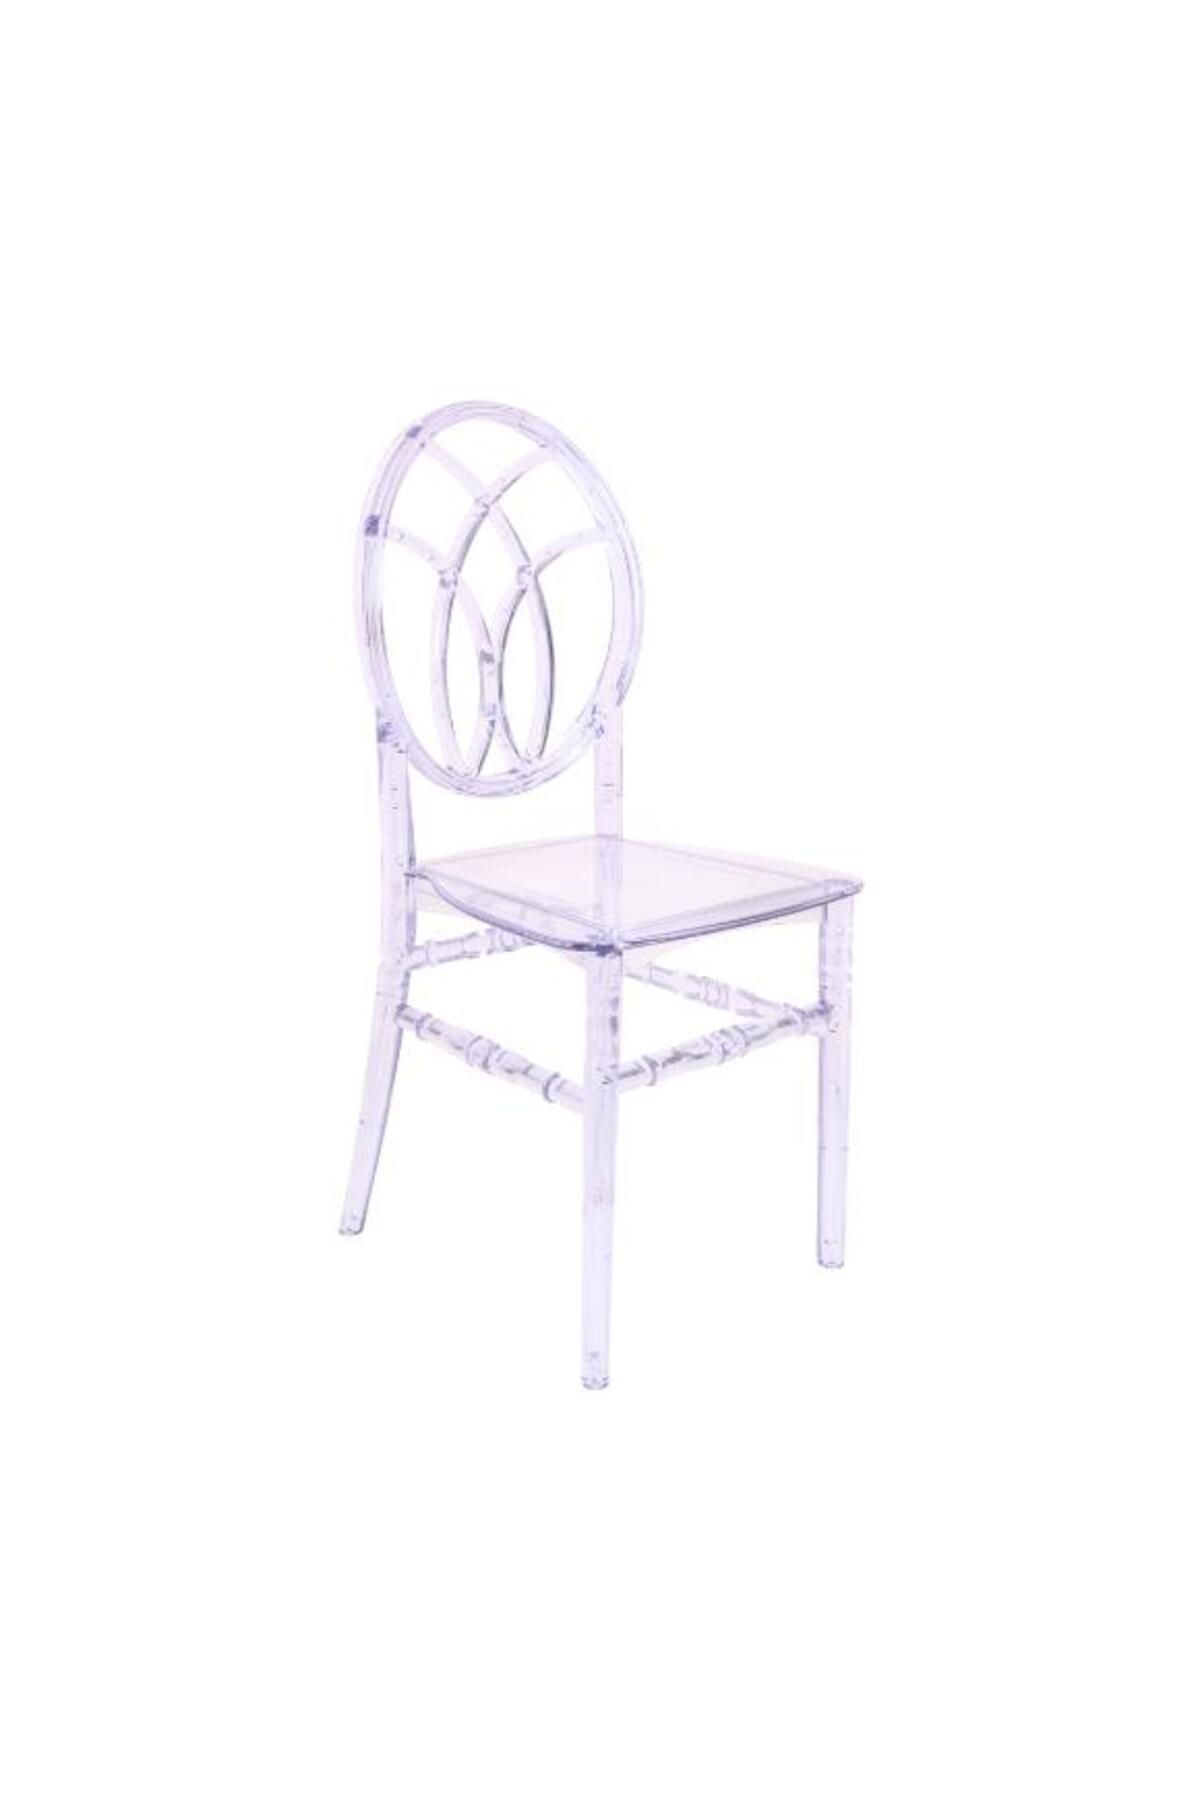 Mandella Karmen Şeffaf Kırılmaya Dayanıklı Sandalye Model 11 (1 Adet)